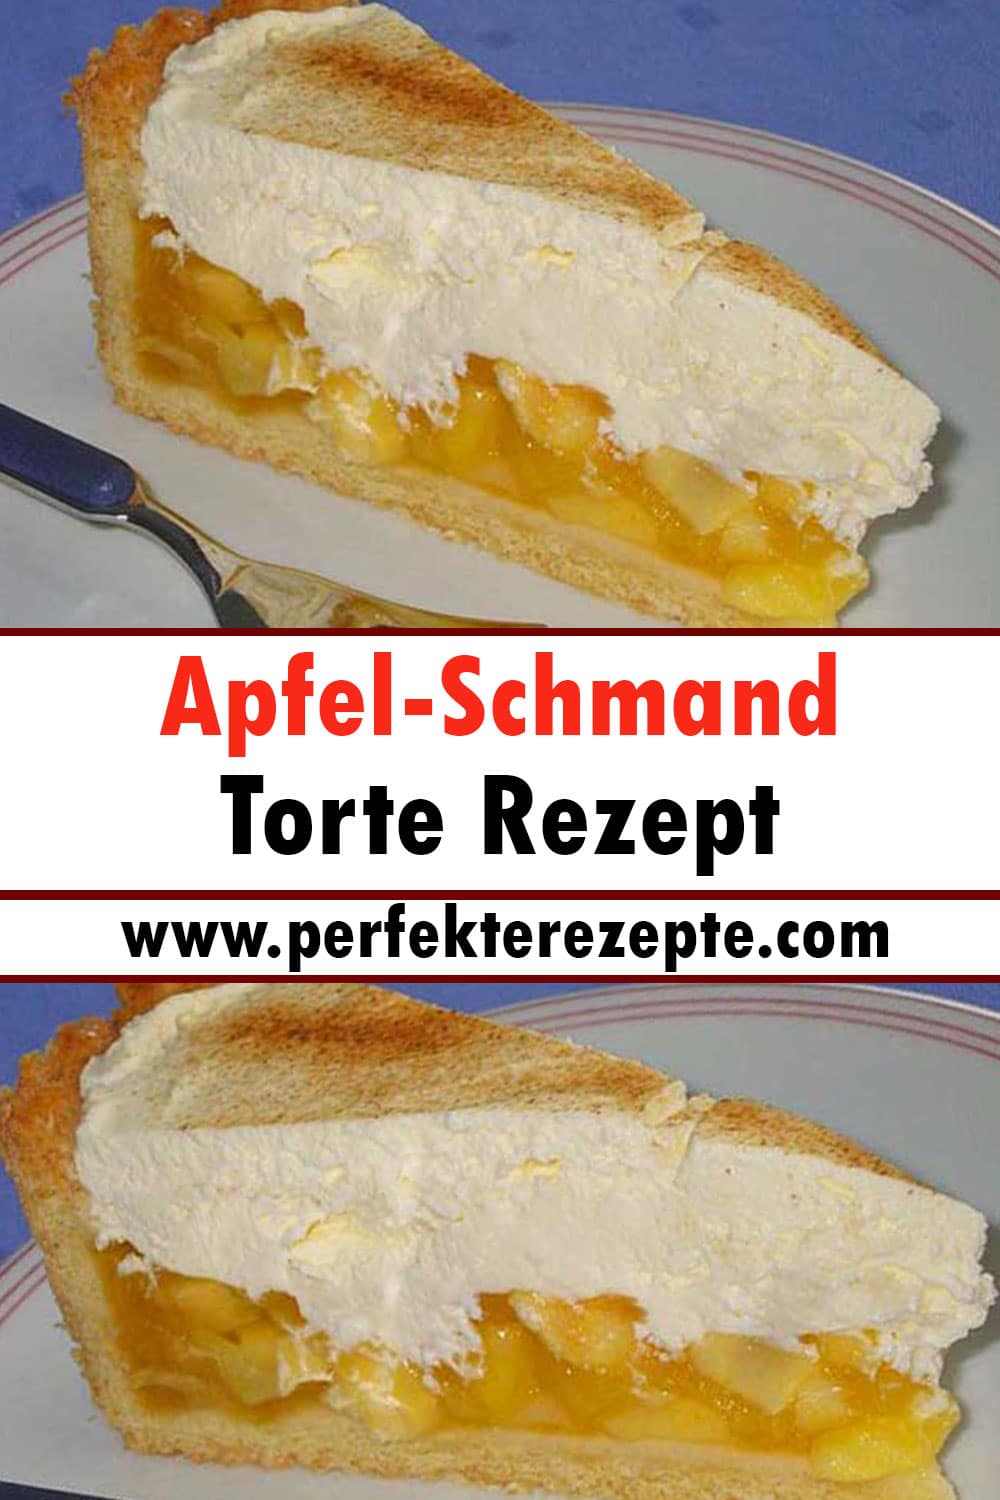 Apfel-Schmand-Torte Rezept